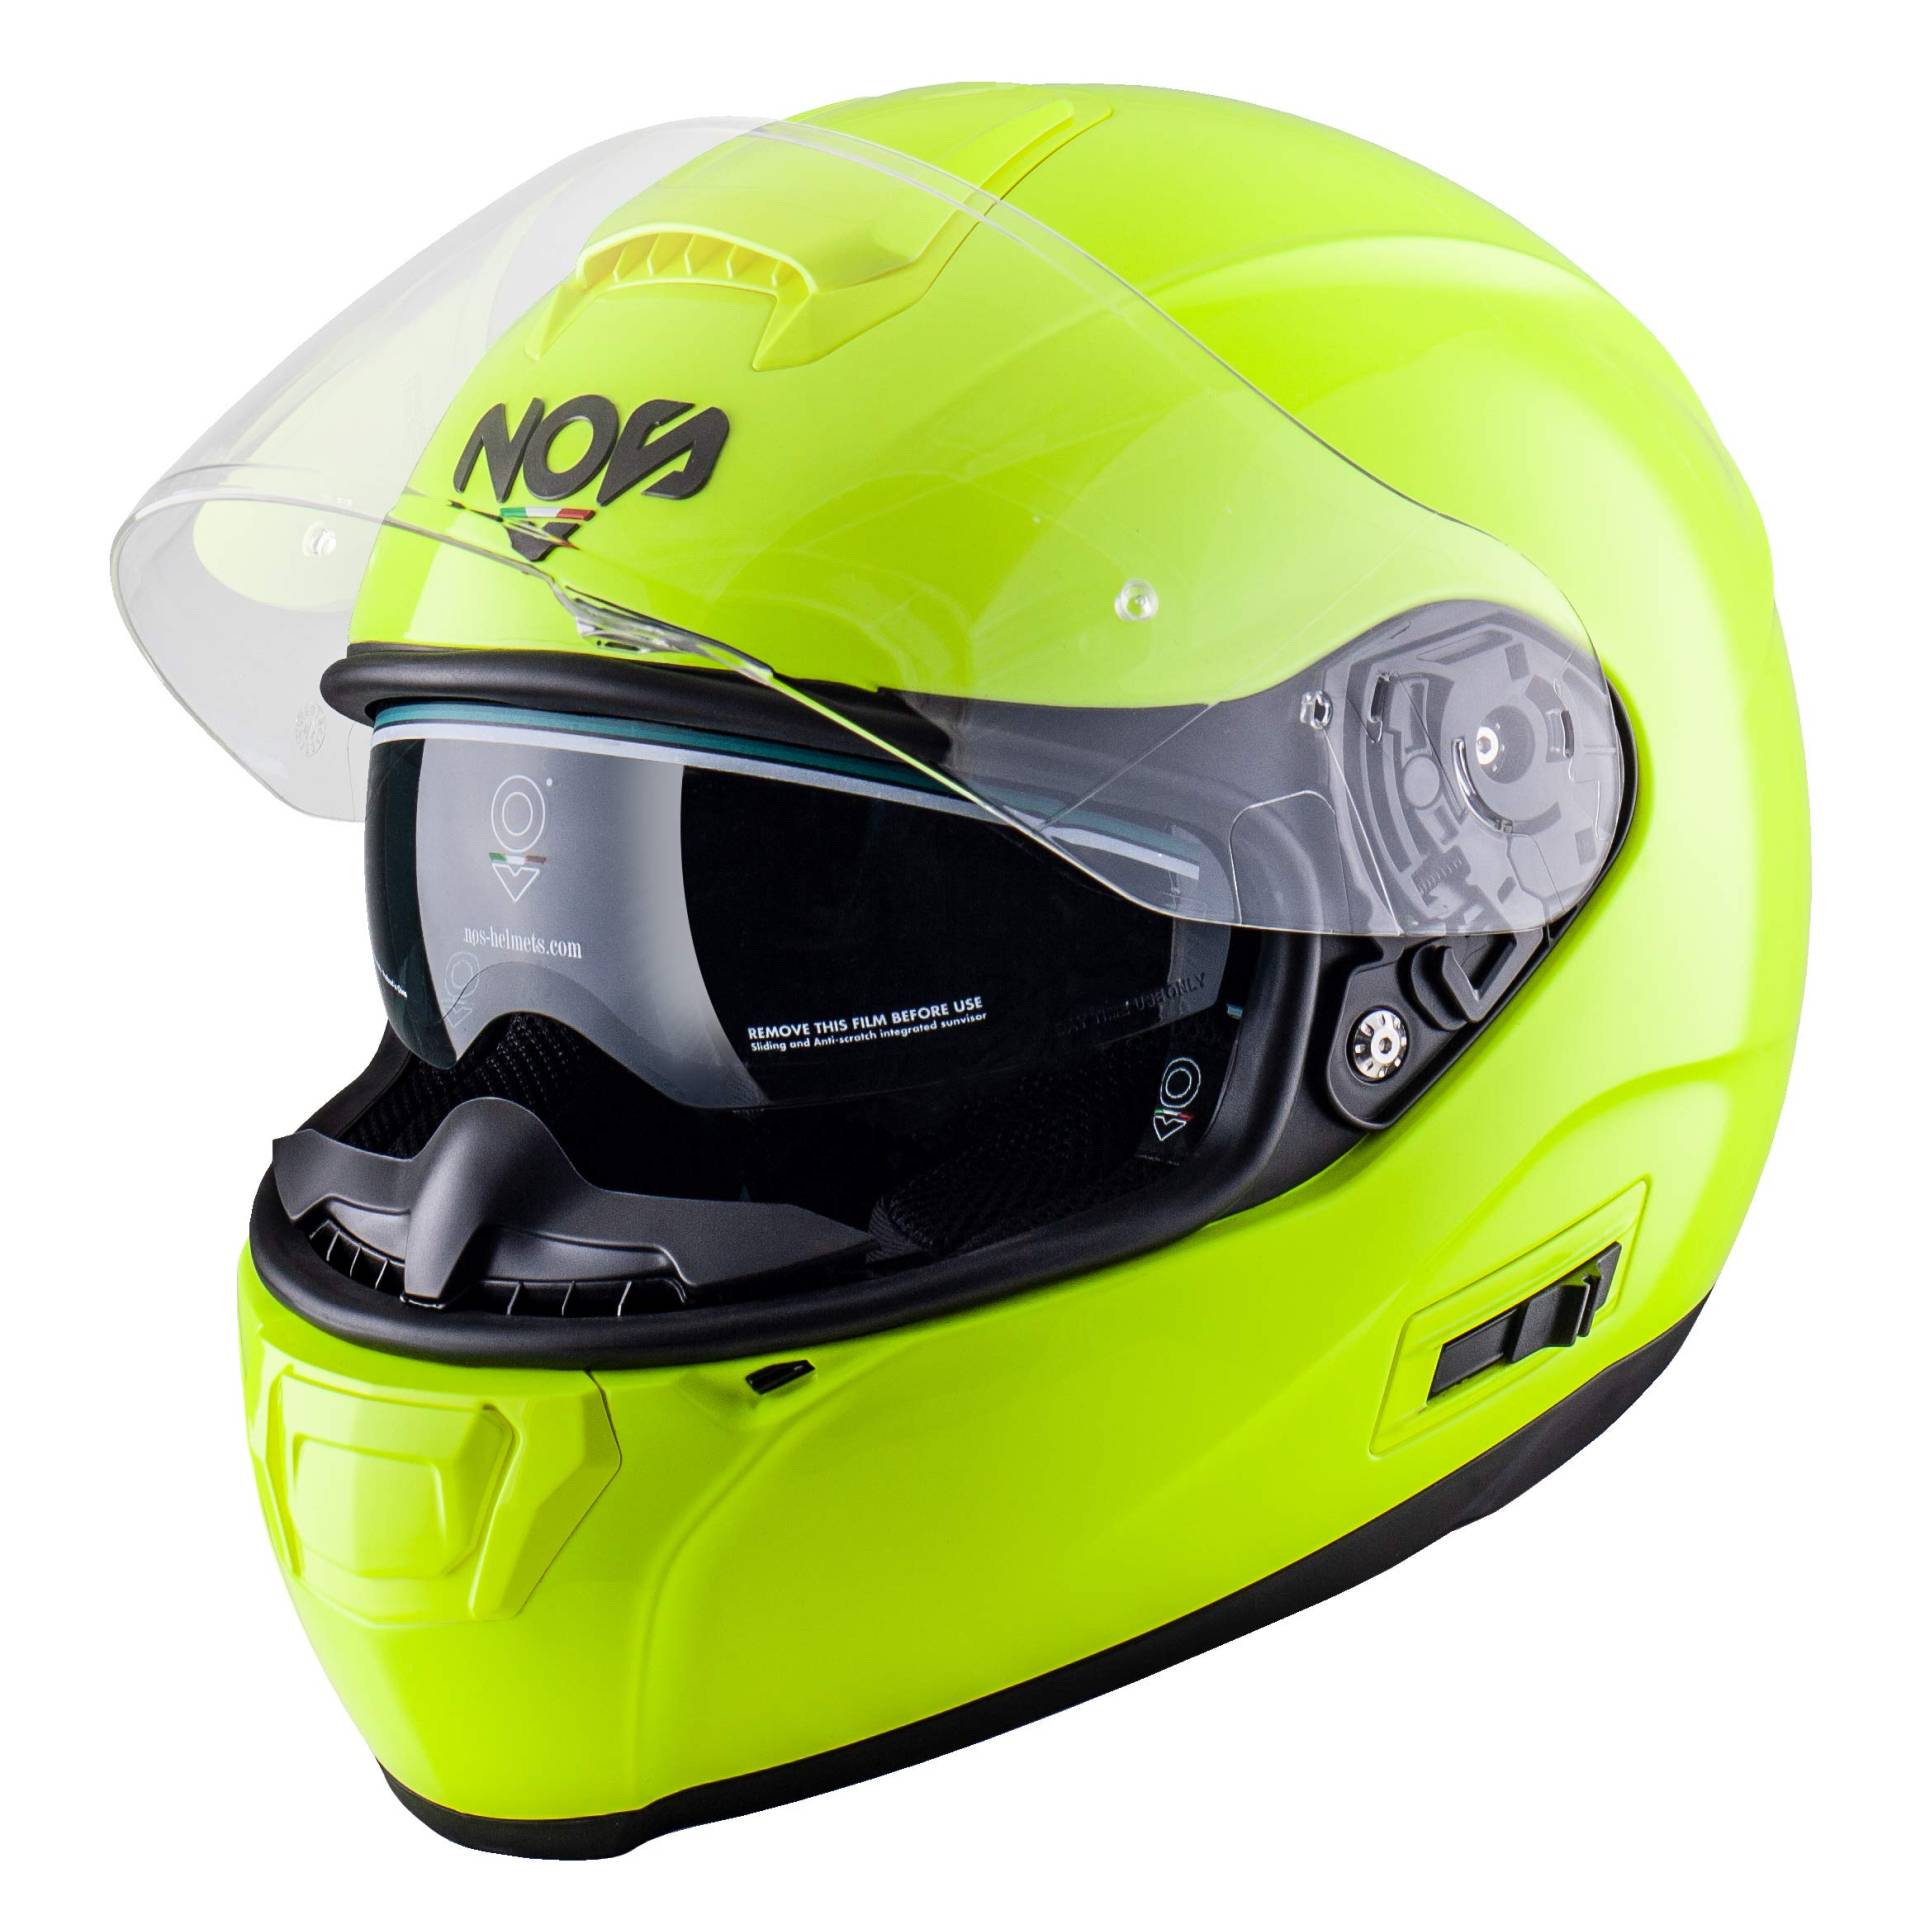 NOS Helmets Helm NS-6 XXL Fluor Yellow von NOS NEW OWN STYLE